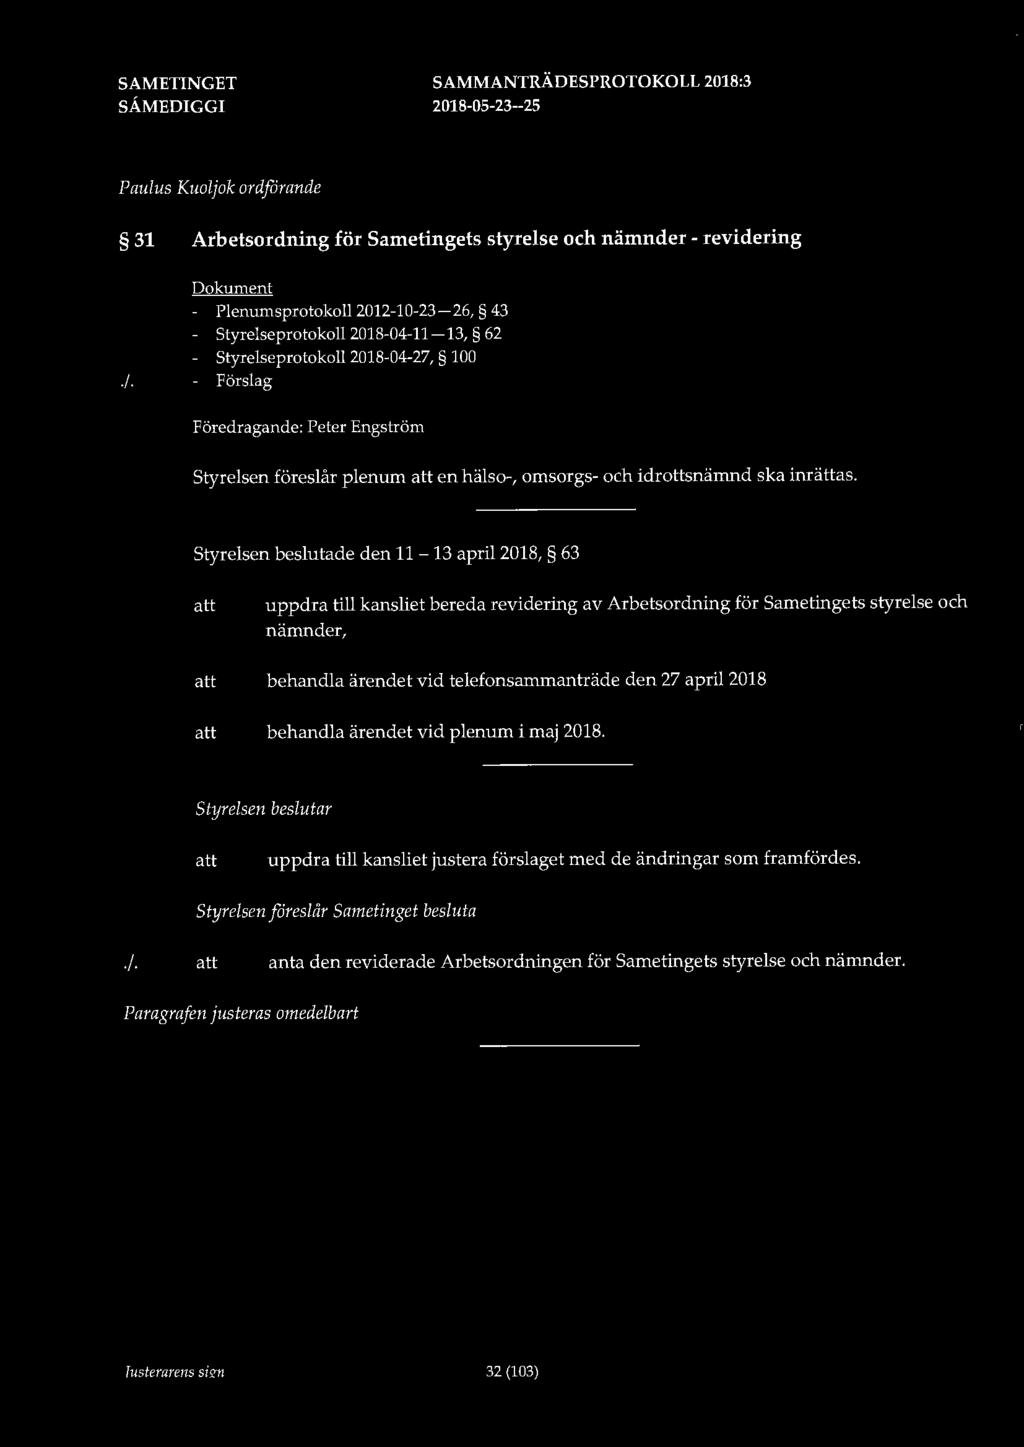 Paulus Kuoljok ordfarande 31 Arbetsordning för Sametingets styrelse och nämnder - revidering Dokument - Plenumsprotokoll 2012-10-23-26, 43 - Styrelseprotokoll 2018-04-11-13, 62 - Styrelseprotokoll